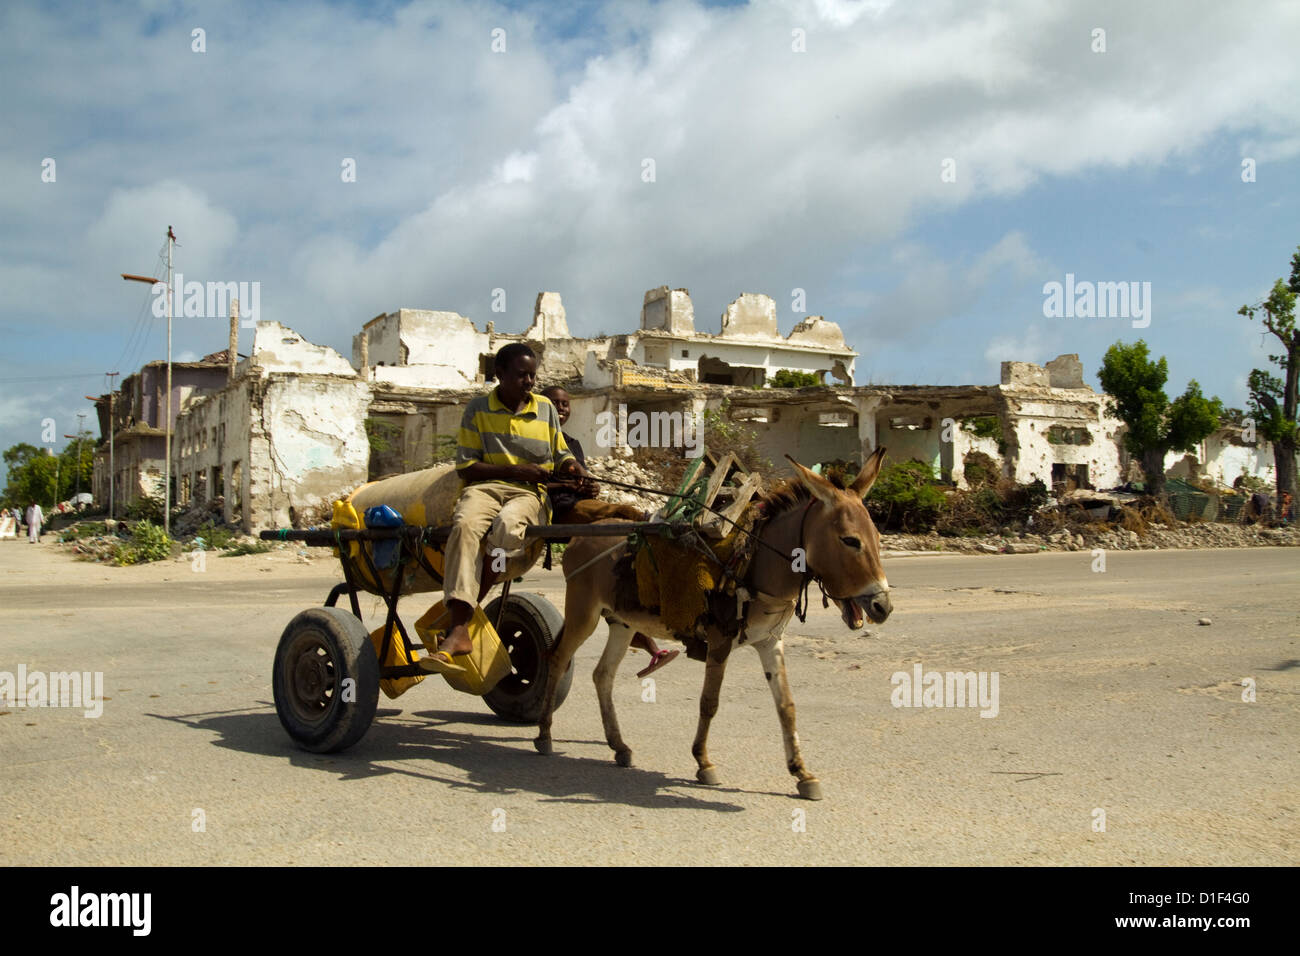 Âne dans une guerre civile a ravagé les rues de Mogadiscio Somalie Banque D'Images